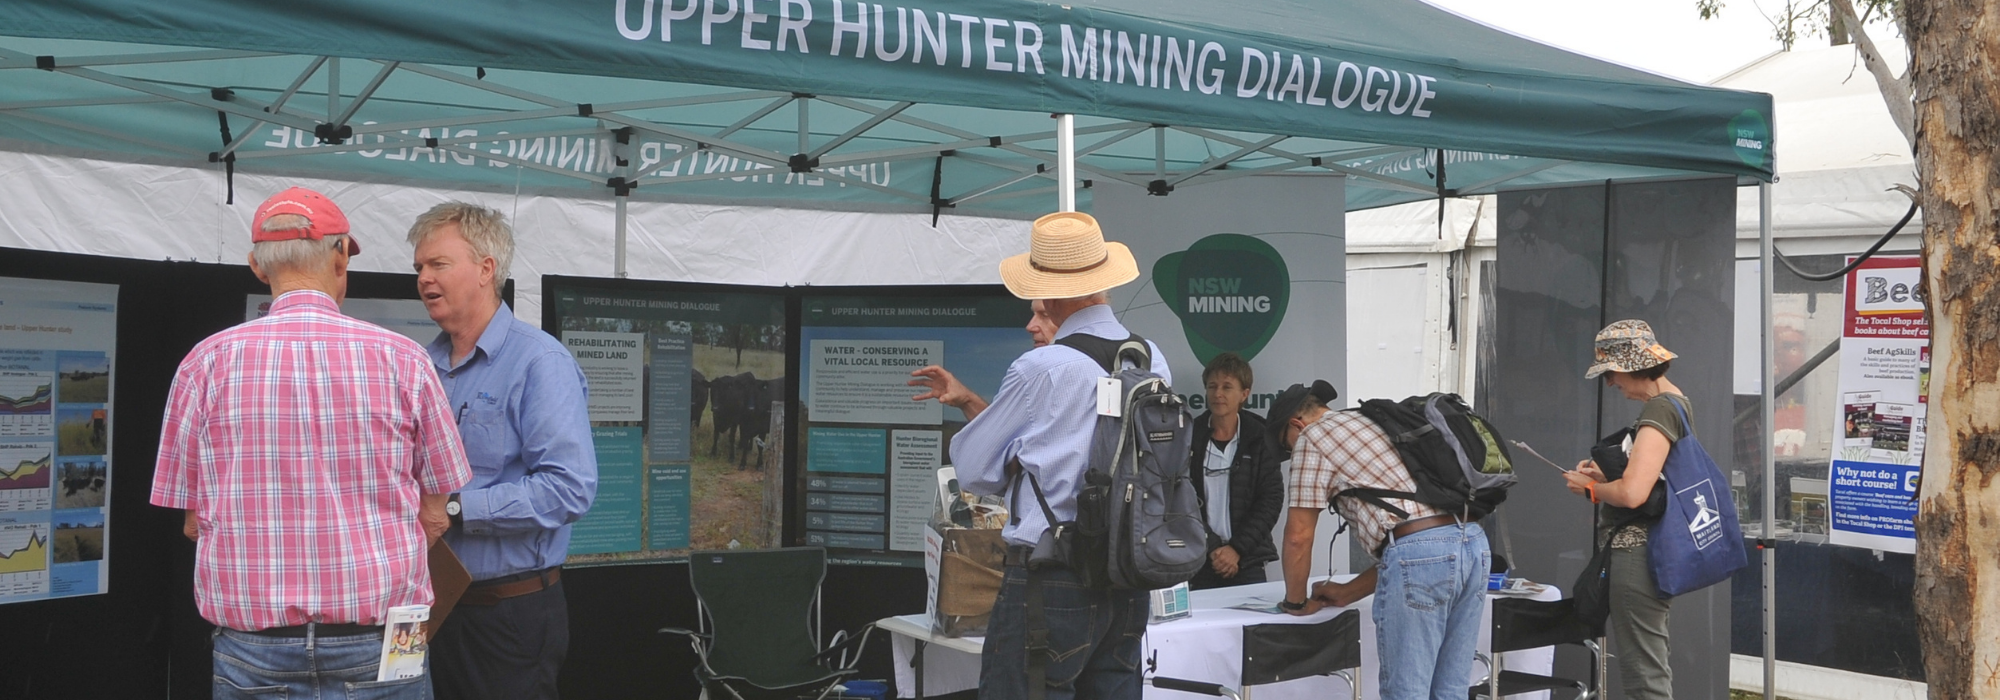 Third annual Upper Hunter Mining Dialogue meeting a huge success